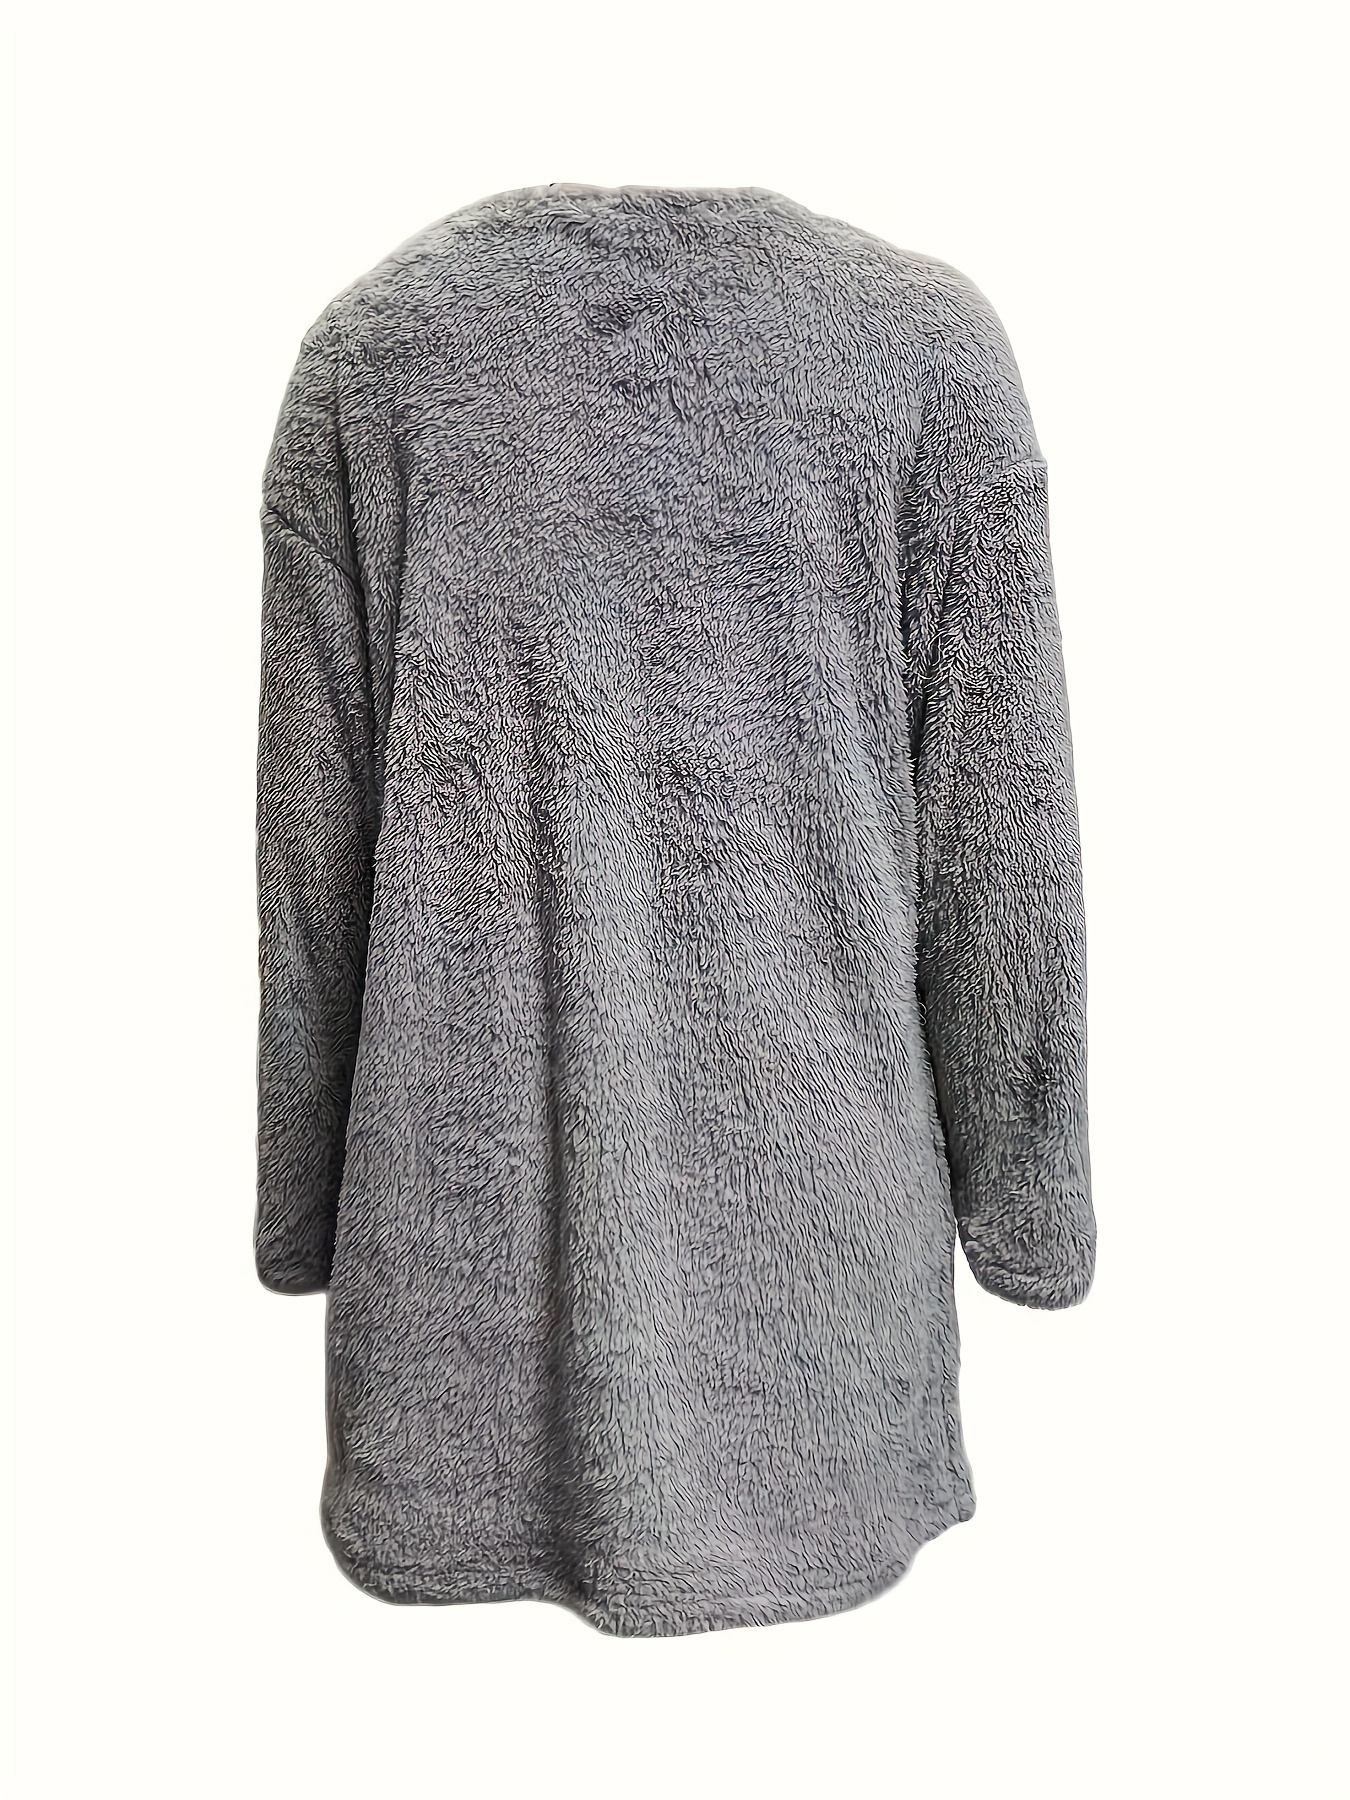 letter print patched pockets sweatshirt casual drop shoulder button decor plush sweatshirt womens clothing details 20